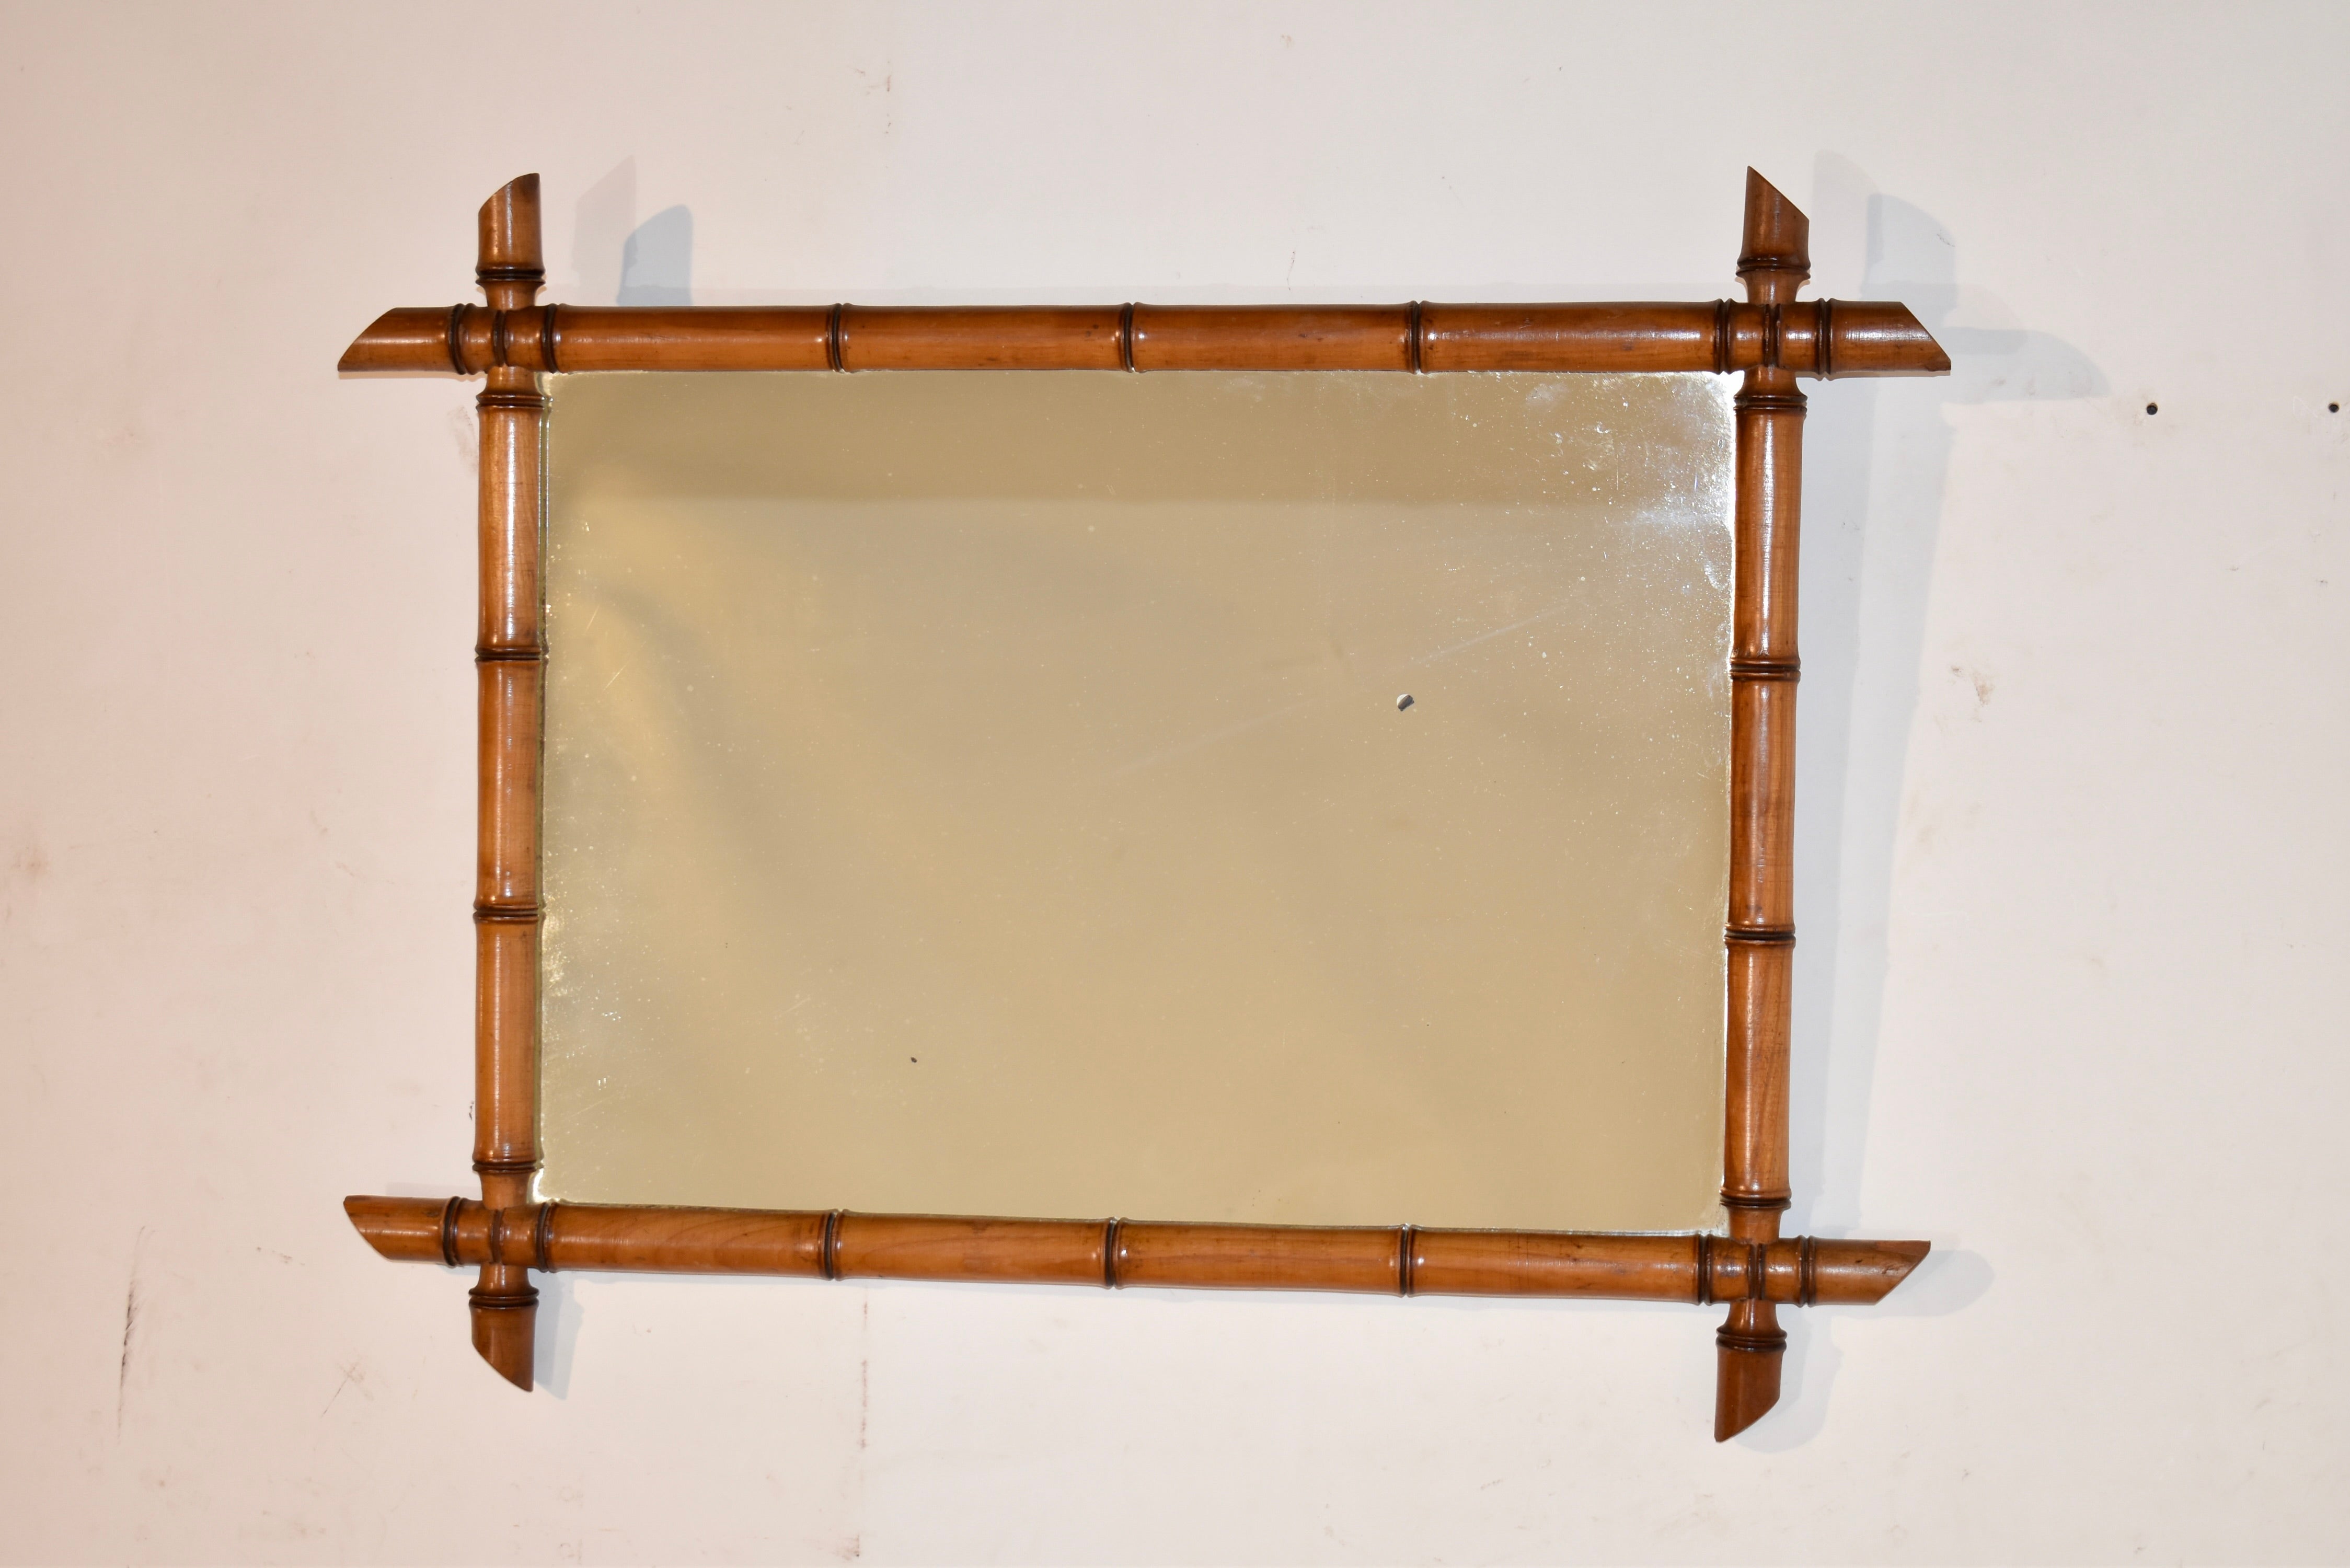 Spiegel mit Bambusrahmen aus dem späten 19. Jahrhundert aus Frankreich.  Der Rahmen ist aus Kirsche gefertigt und von Hand so gedrechselt, dass er an Bambus erinnert.  Er umgibt einen alten Spiegel, der einige altersbedingte Schäden am Quecksilber